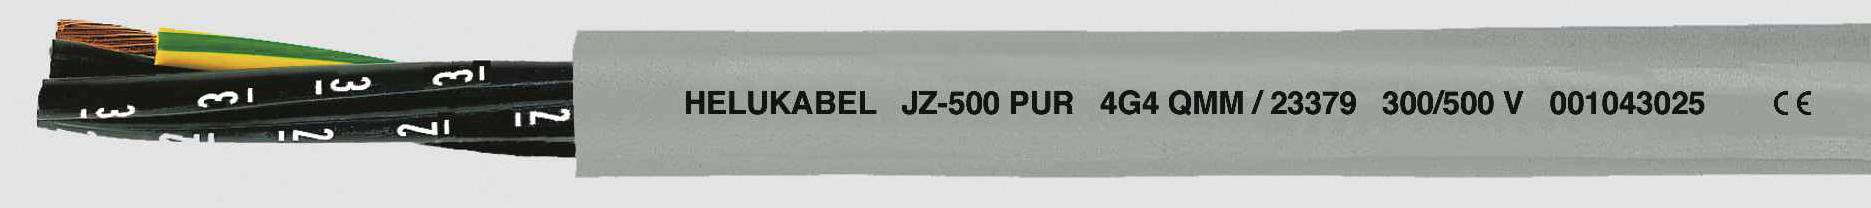 HELUKABEL JZ-500 PUR Steuerleitung 7 G 2.50 mm² Grau 23377-500 500 m